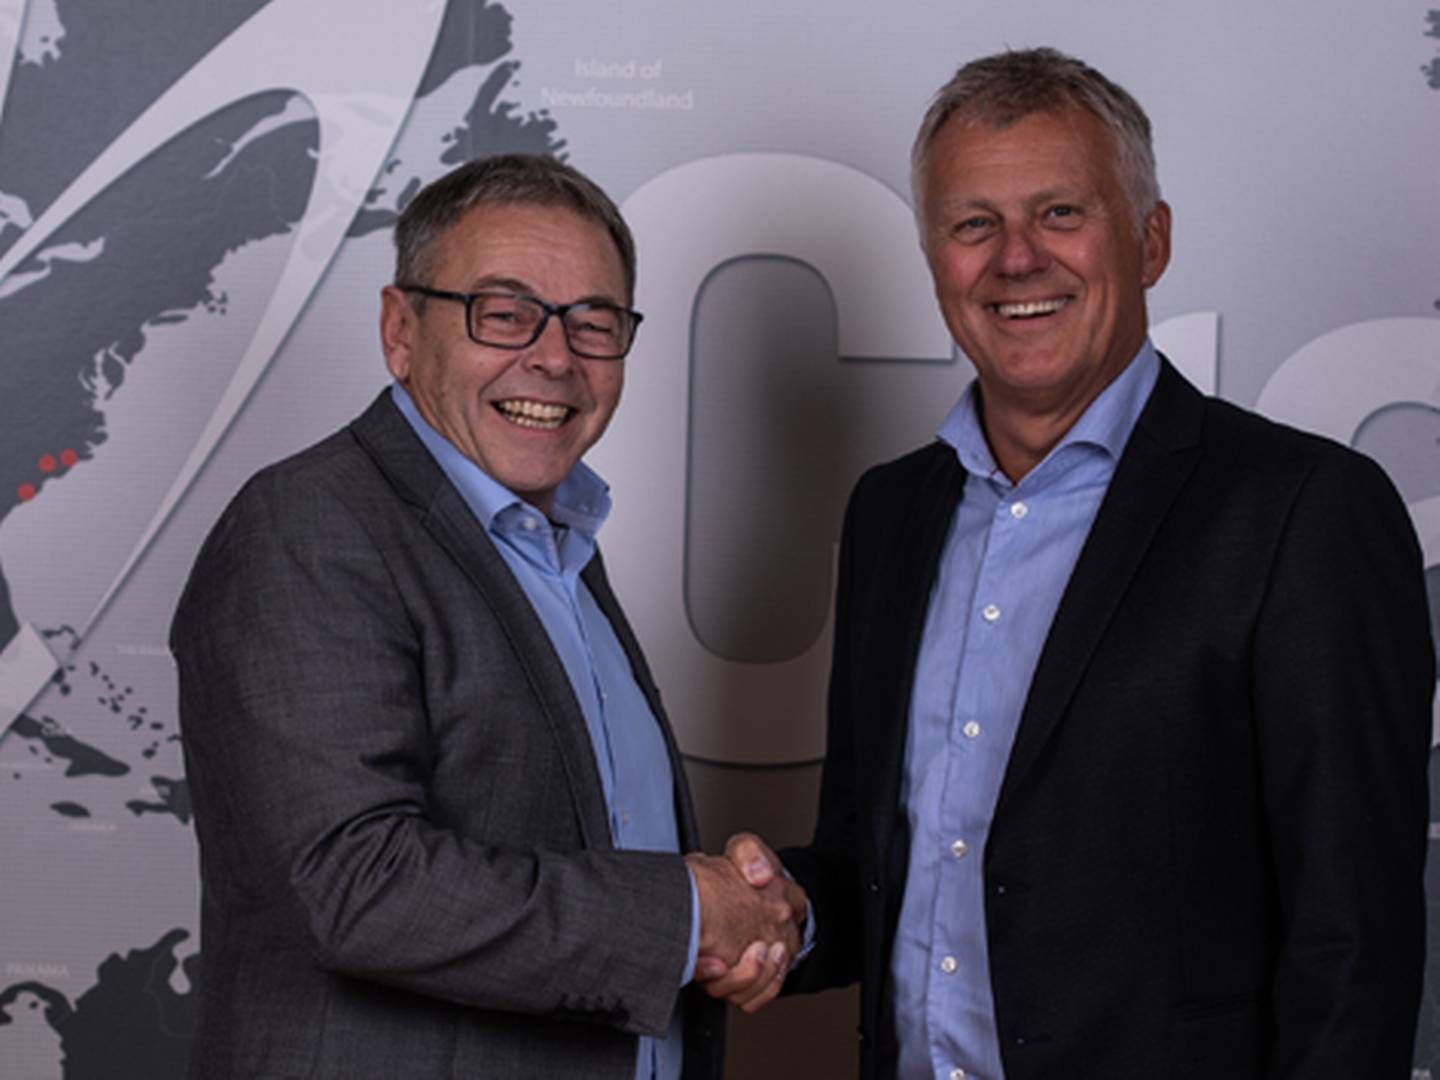 Bjarne Riis, (TV) giver stafetten videre til Crayons næste danske direktør. Bjarne Riis fortsætter karrieren videre i Crayon-koncernen. | Foto: Crayon